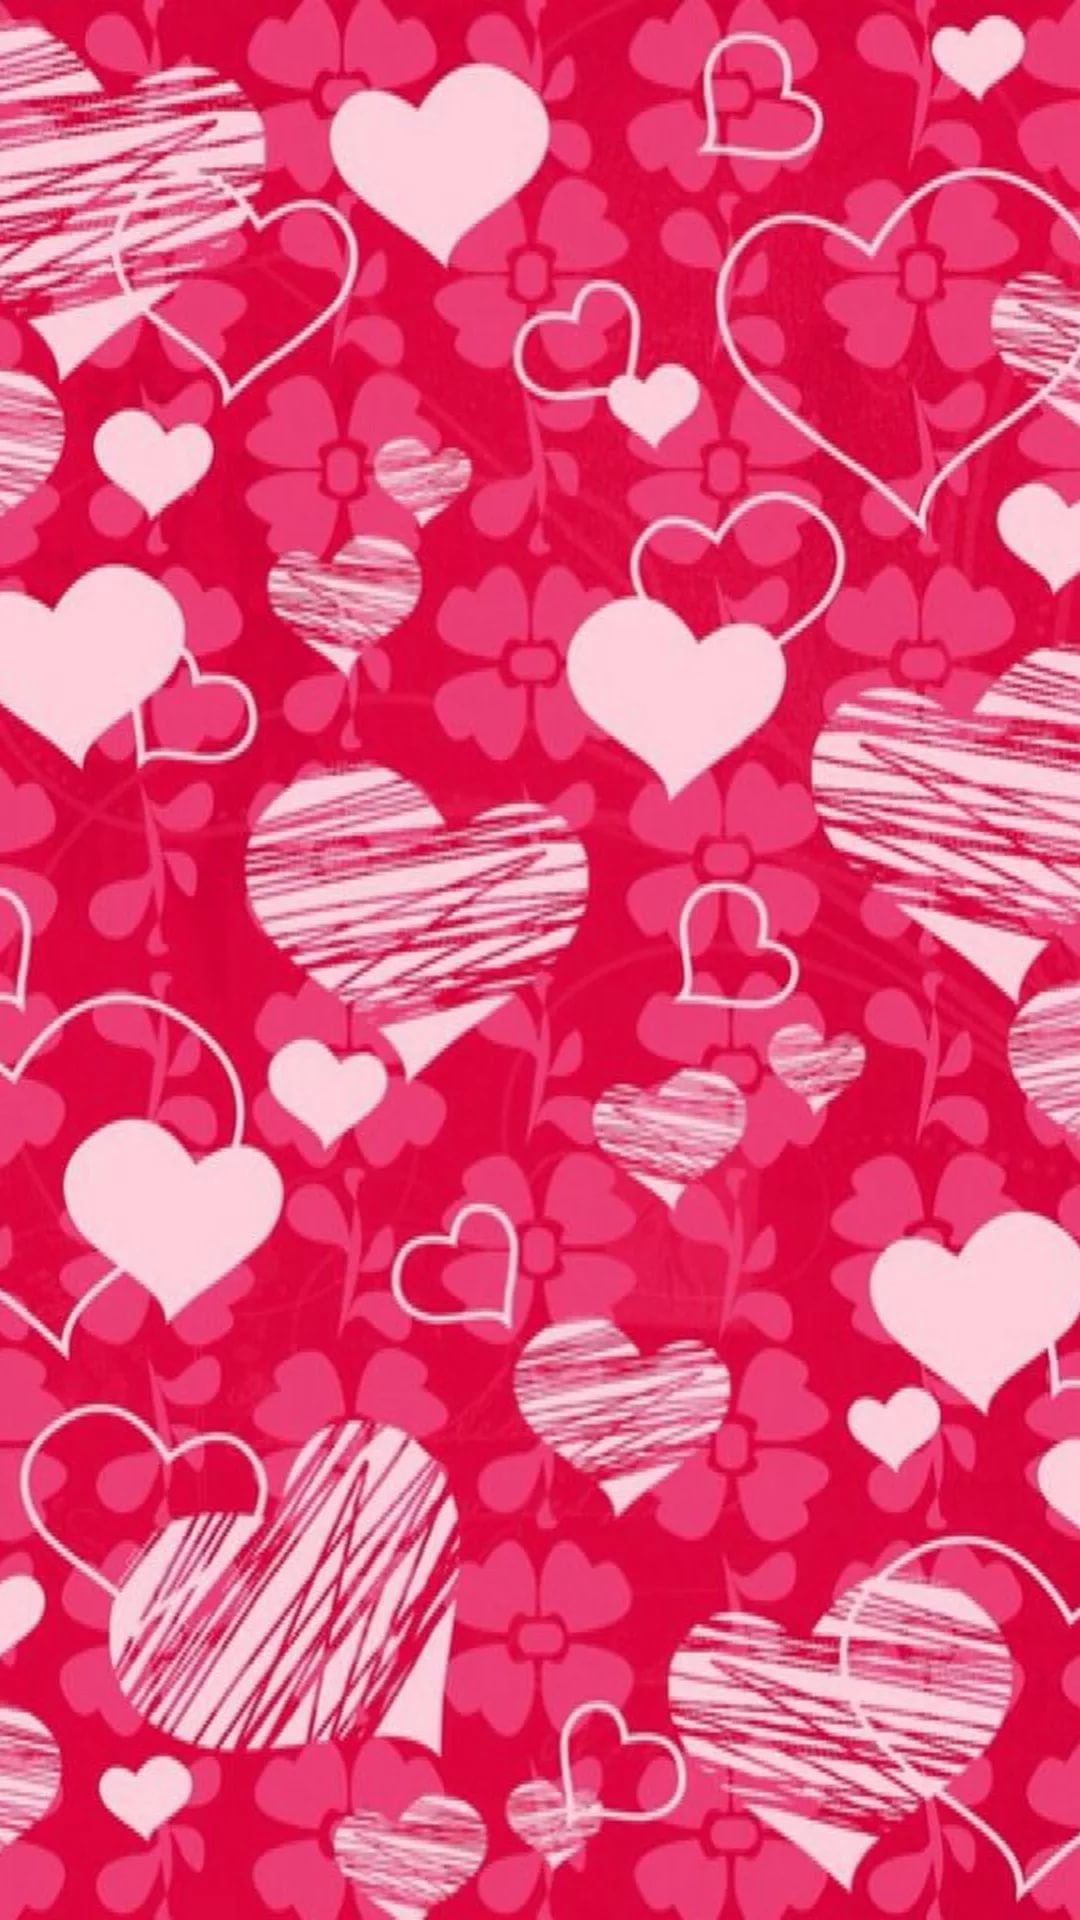 バレンタインデーの壁紙,心臓,赤,ピンク,パターン,バレンタイン・デー